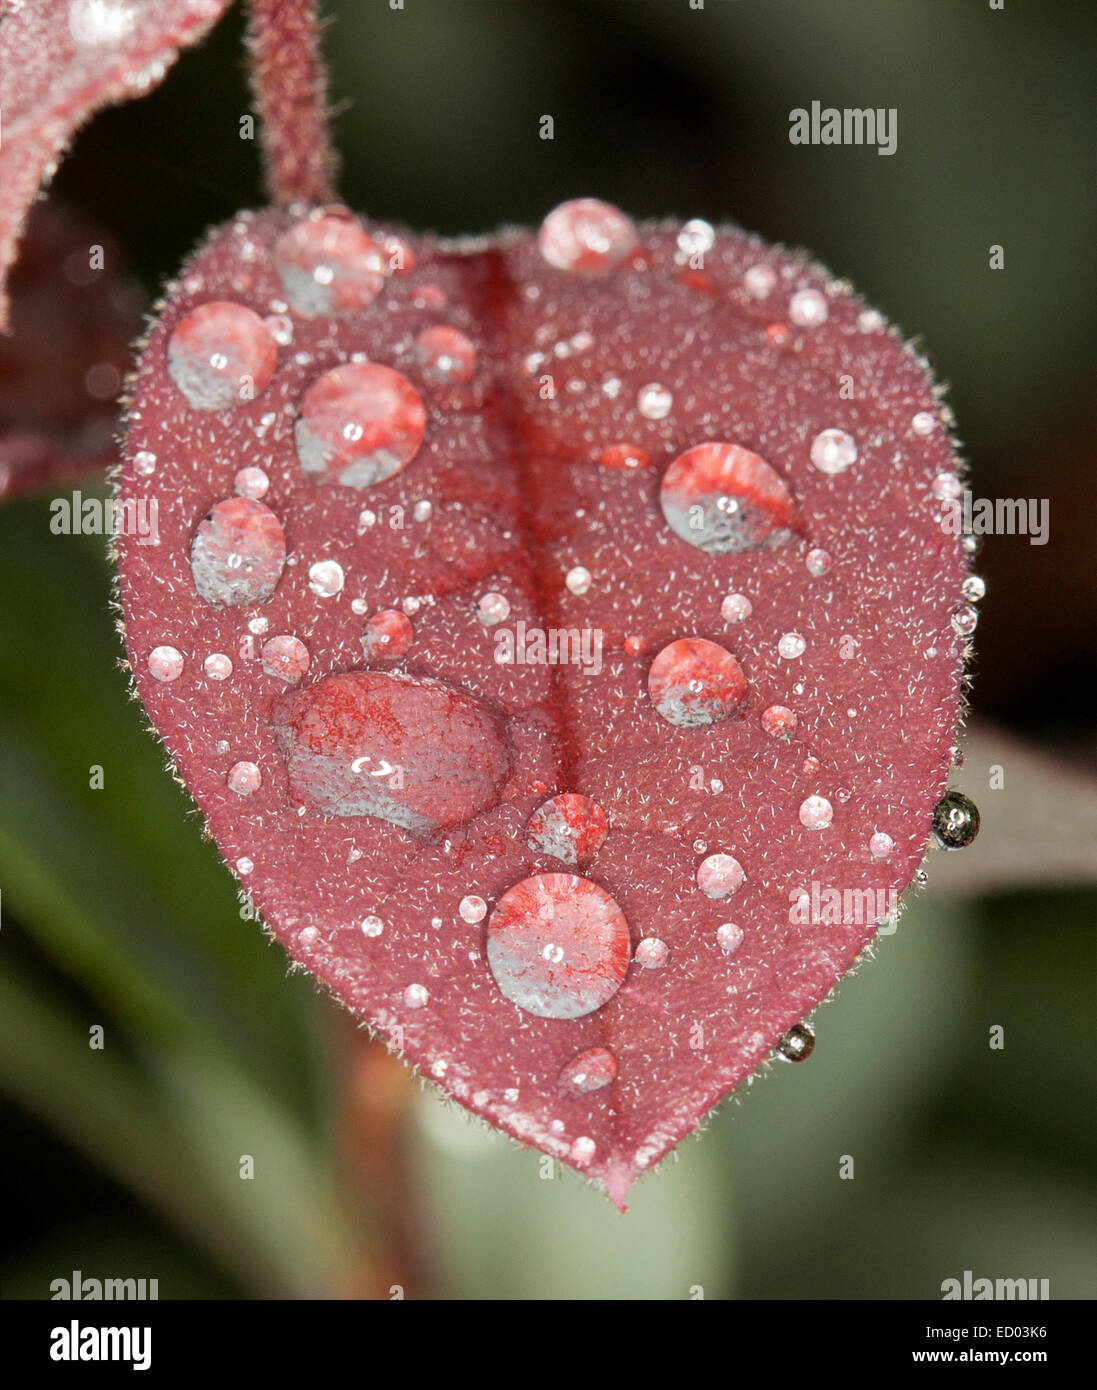 Cuore rosso a forma di foglia Loropetalum chinensis fringe fiore, con le gocce di pioggia luccicante come gioielli - Contro il verde scuro bkgrd Foto Stock